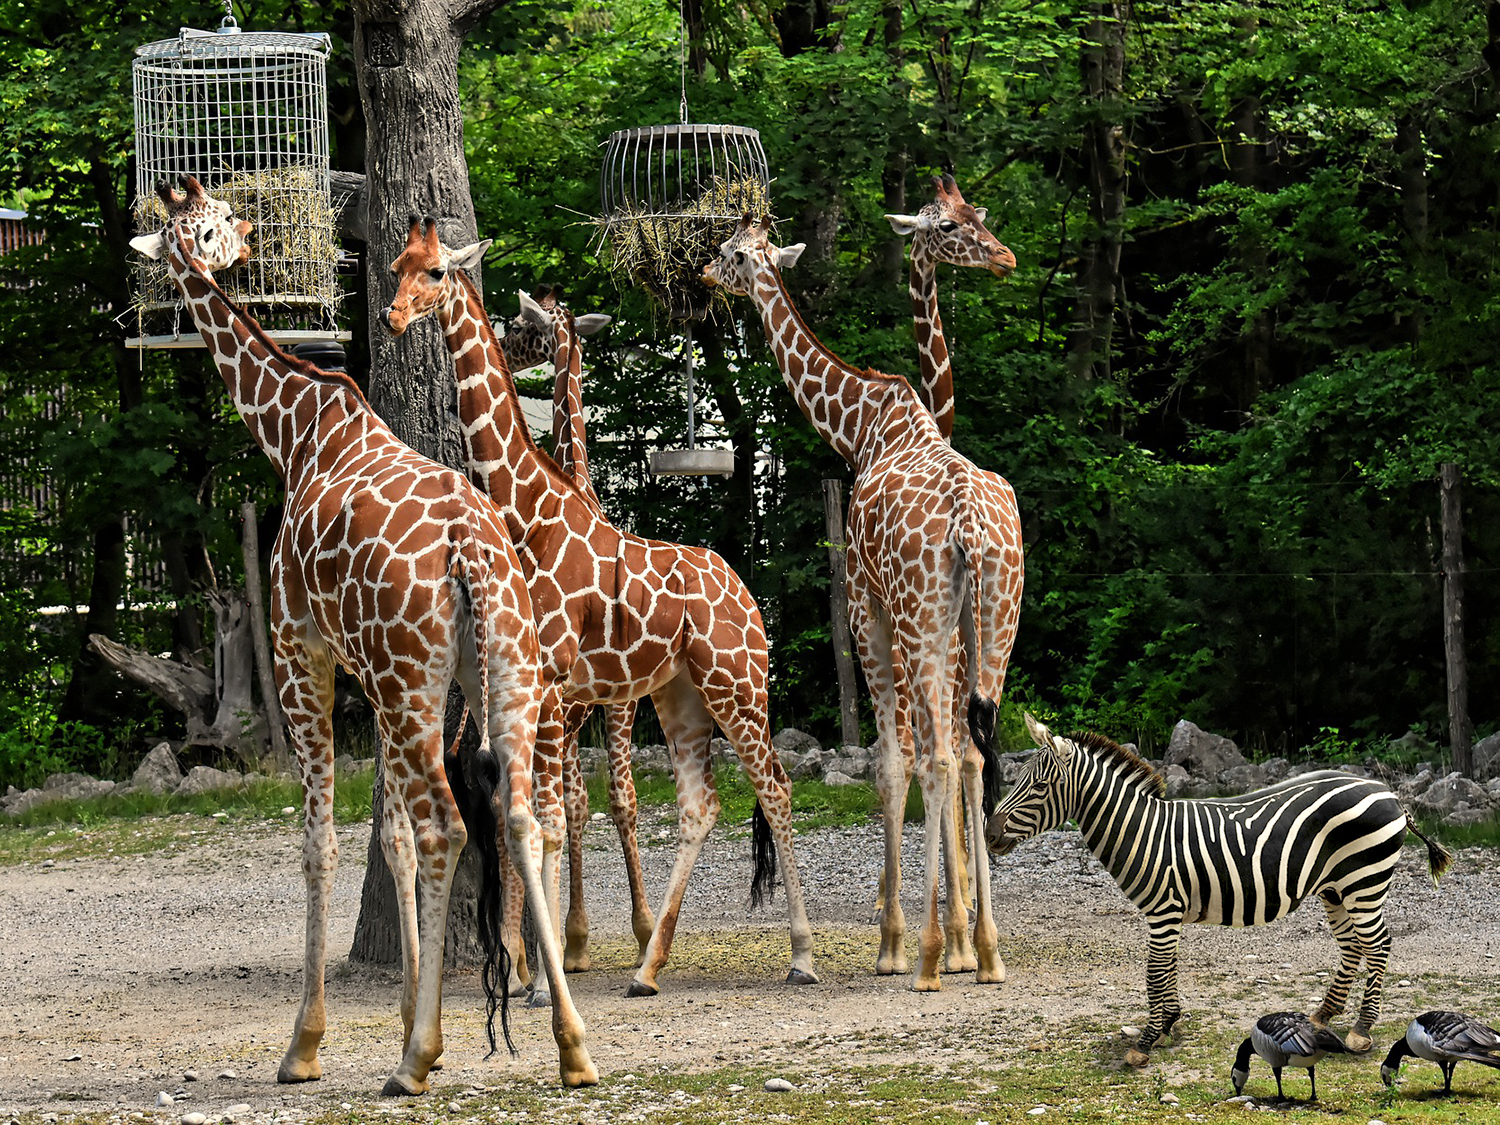 Pet žirafa u zoološkom vrtu hrane se pomoću hranilica obješenih na drvetu, a pored njih je i zebra.